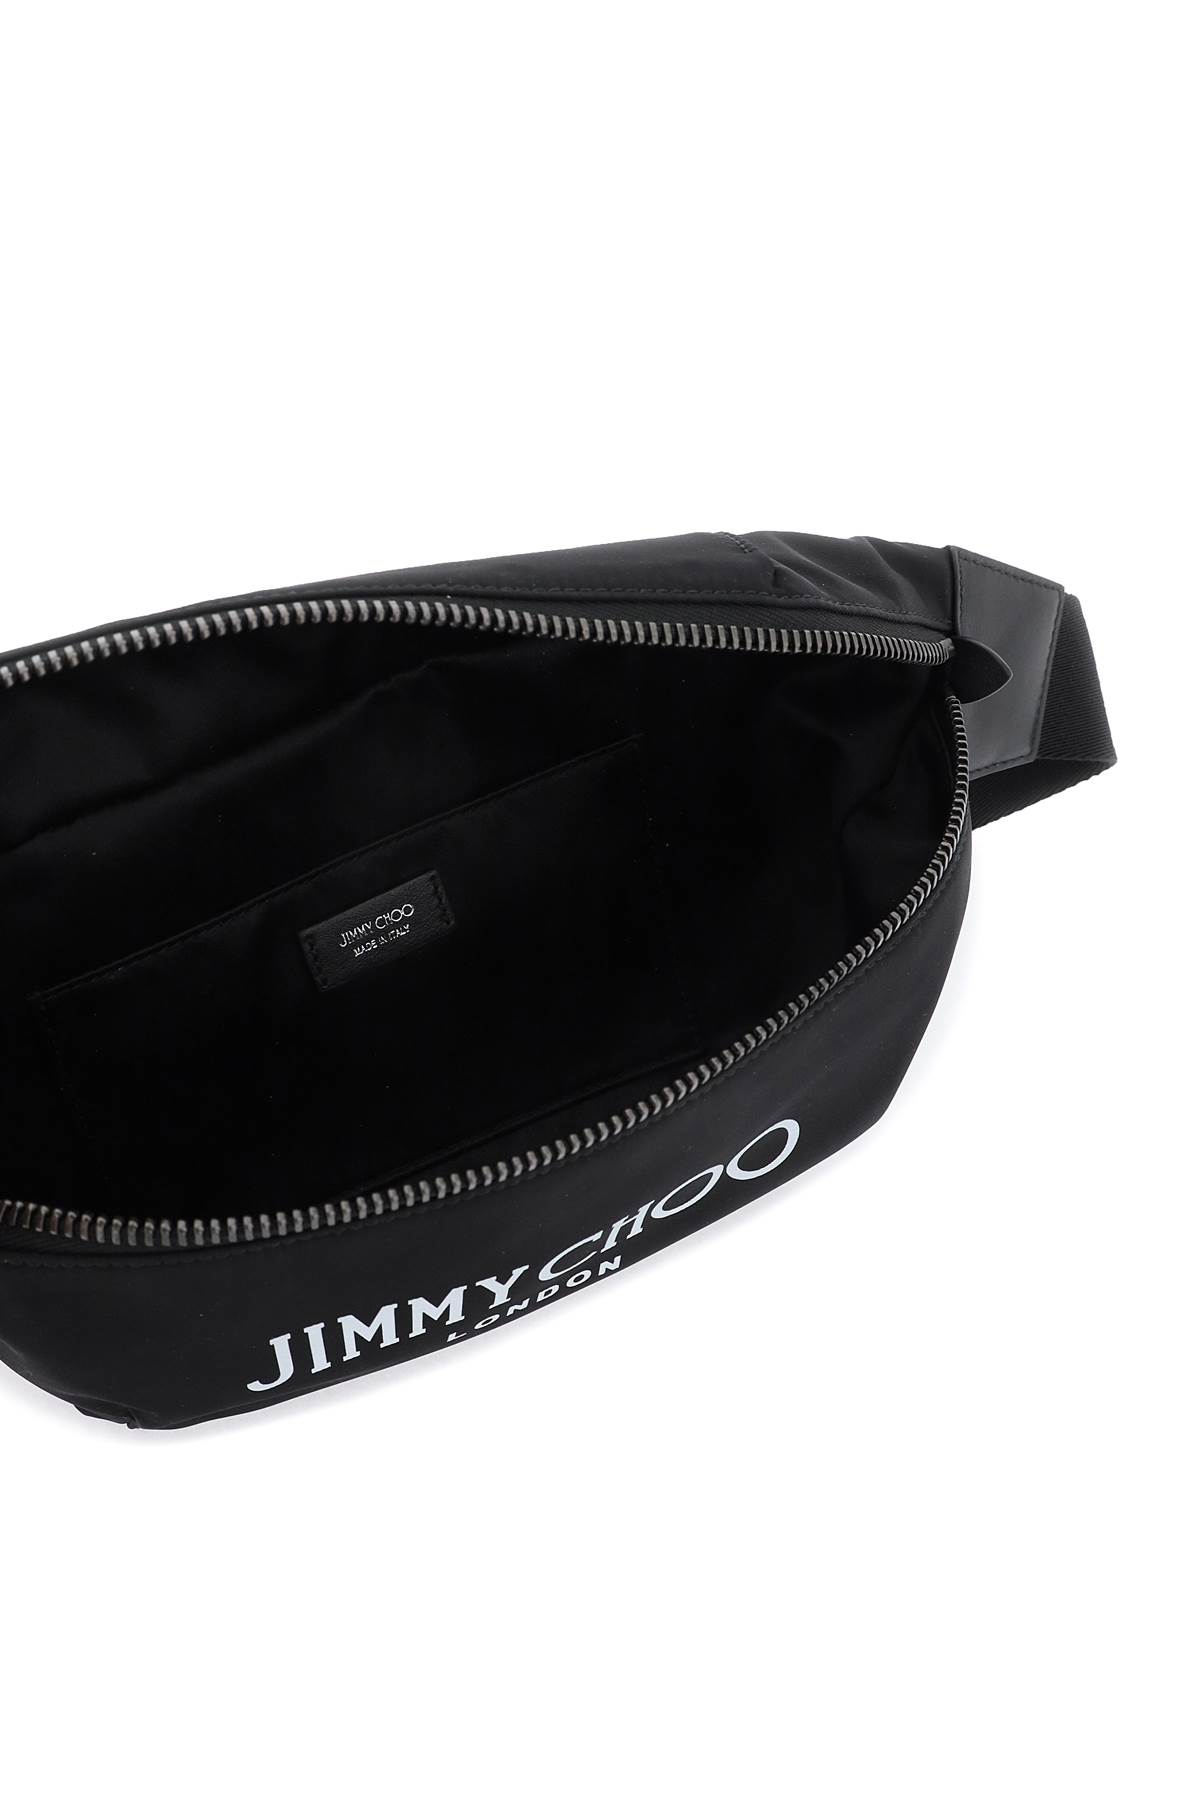 Shop Jimmy Choo Finsley Beltpack In Black Latte Gunmetal (black)